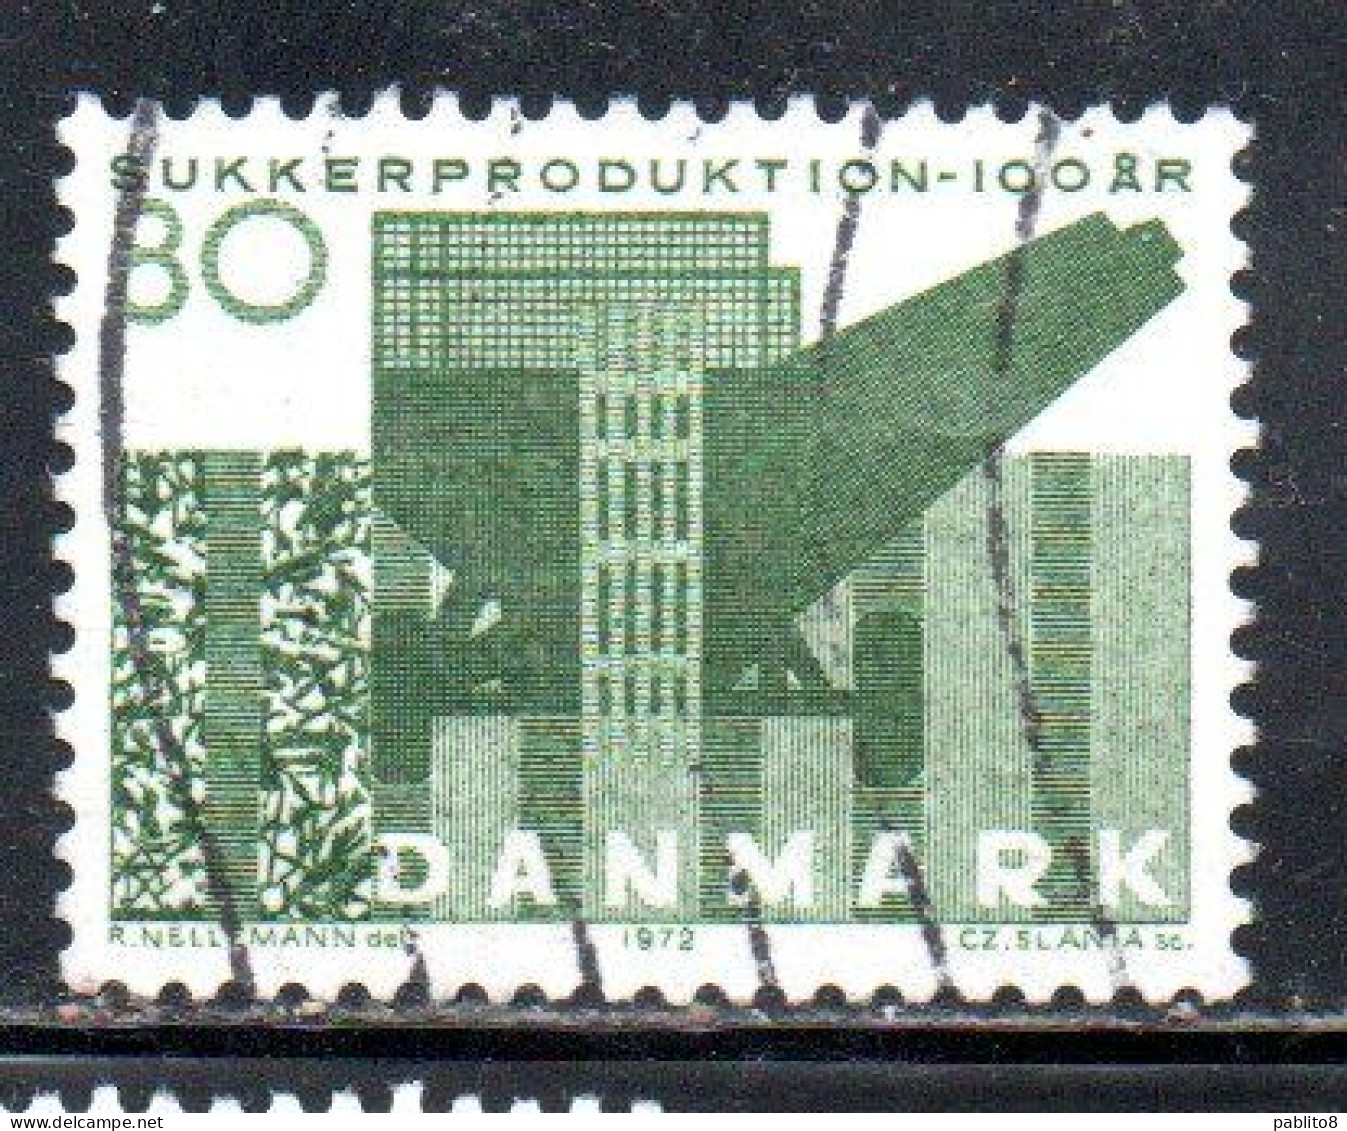 DANEMARK DANMARK DENMARK DANIMARCA 1972 CENTENARY OF DANISH SUGAR PRODUCTION 80o USED USATO OBLITERE' - Used Stamps